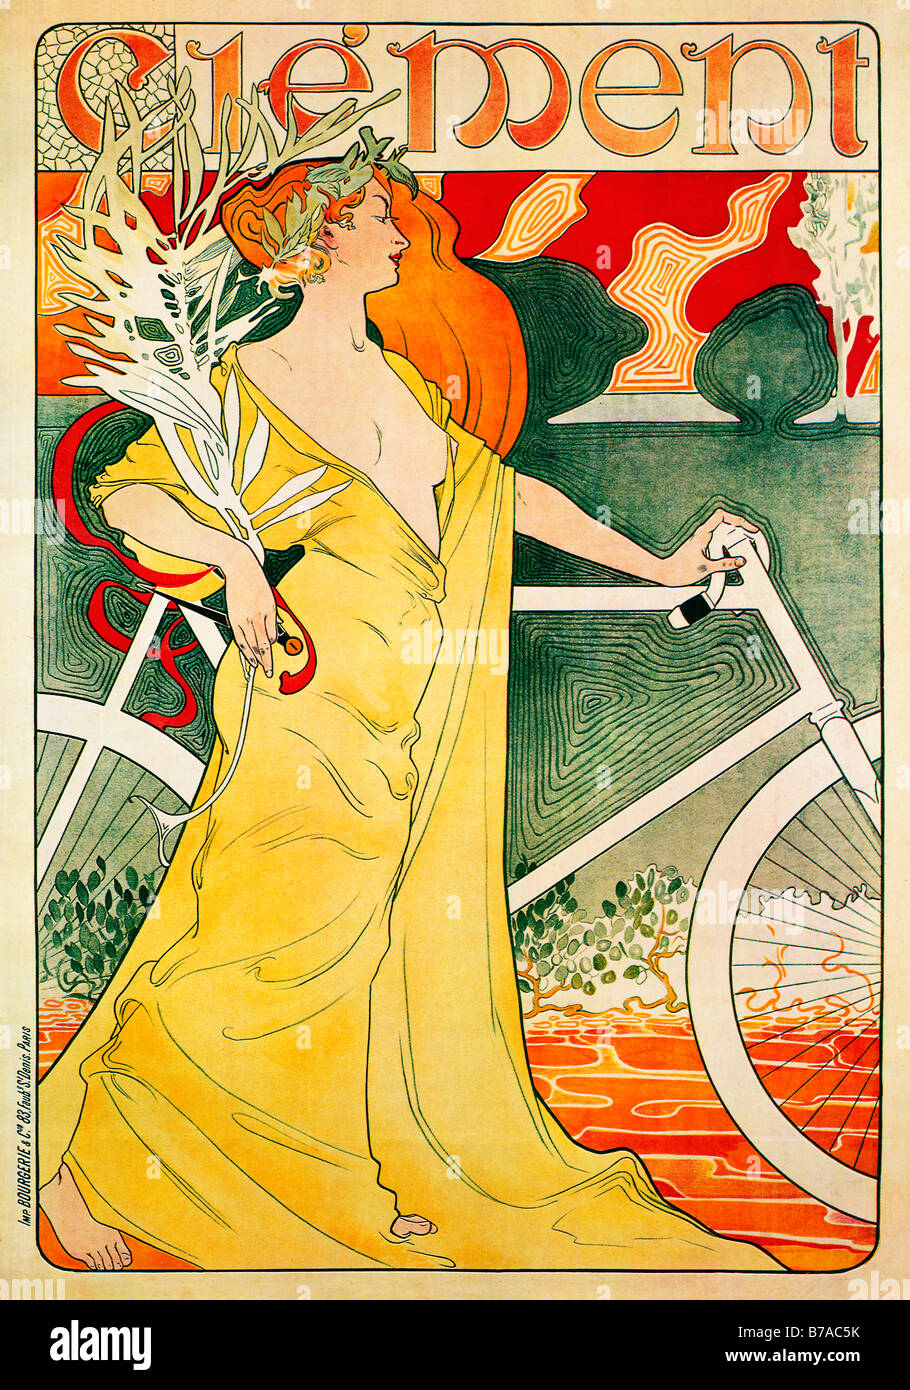 Art Nouveau 1903 Cycles Clement poster par Misti pour le fabricant français de vélos haut de gamme Banque D'Images